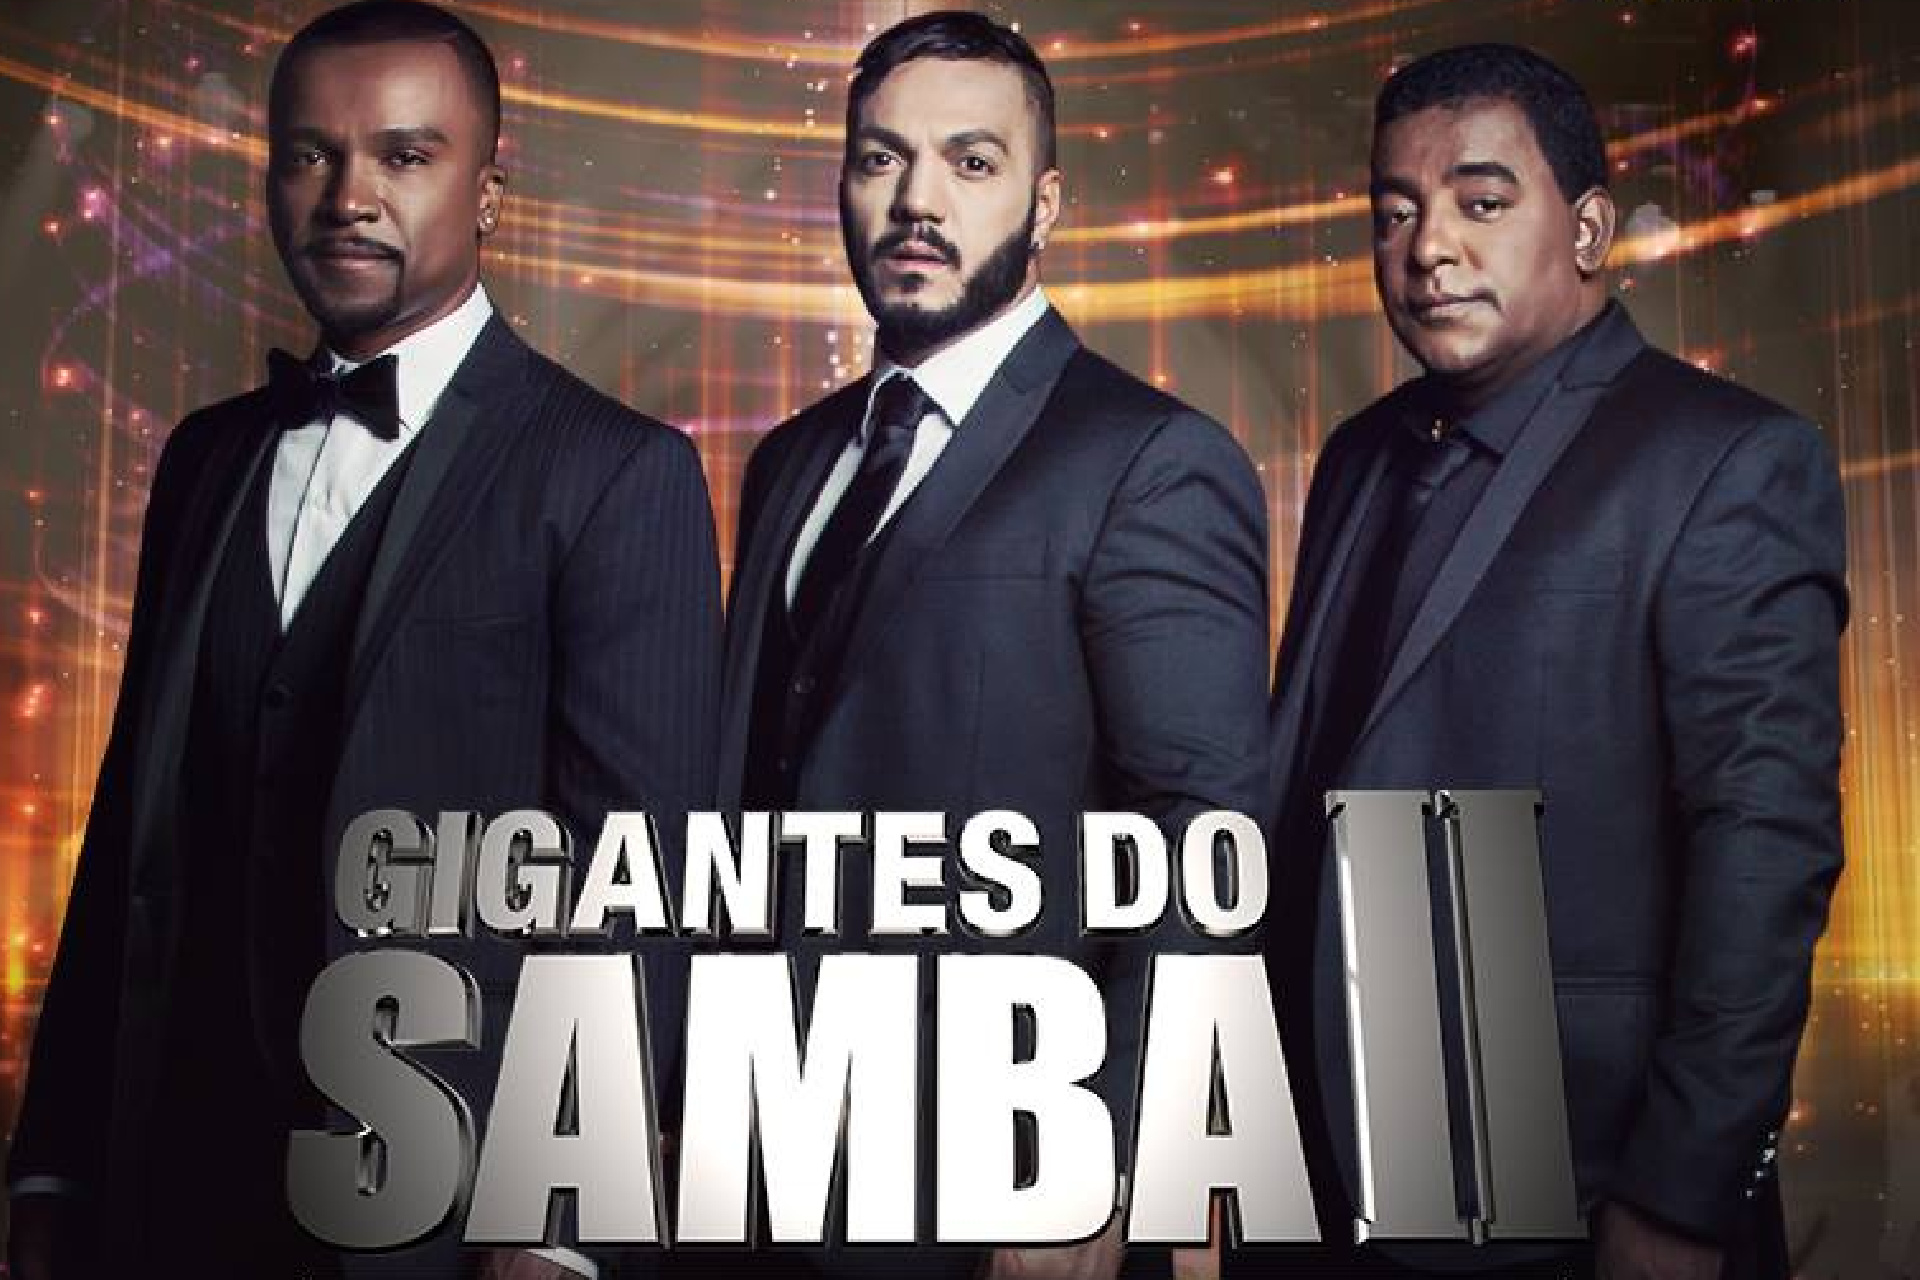 Gigantes do samba II